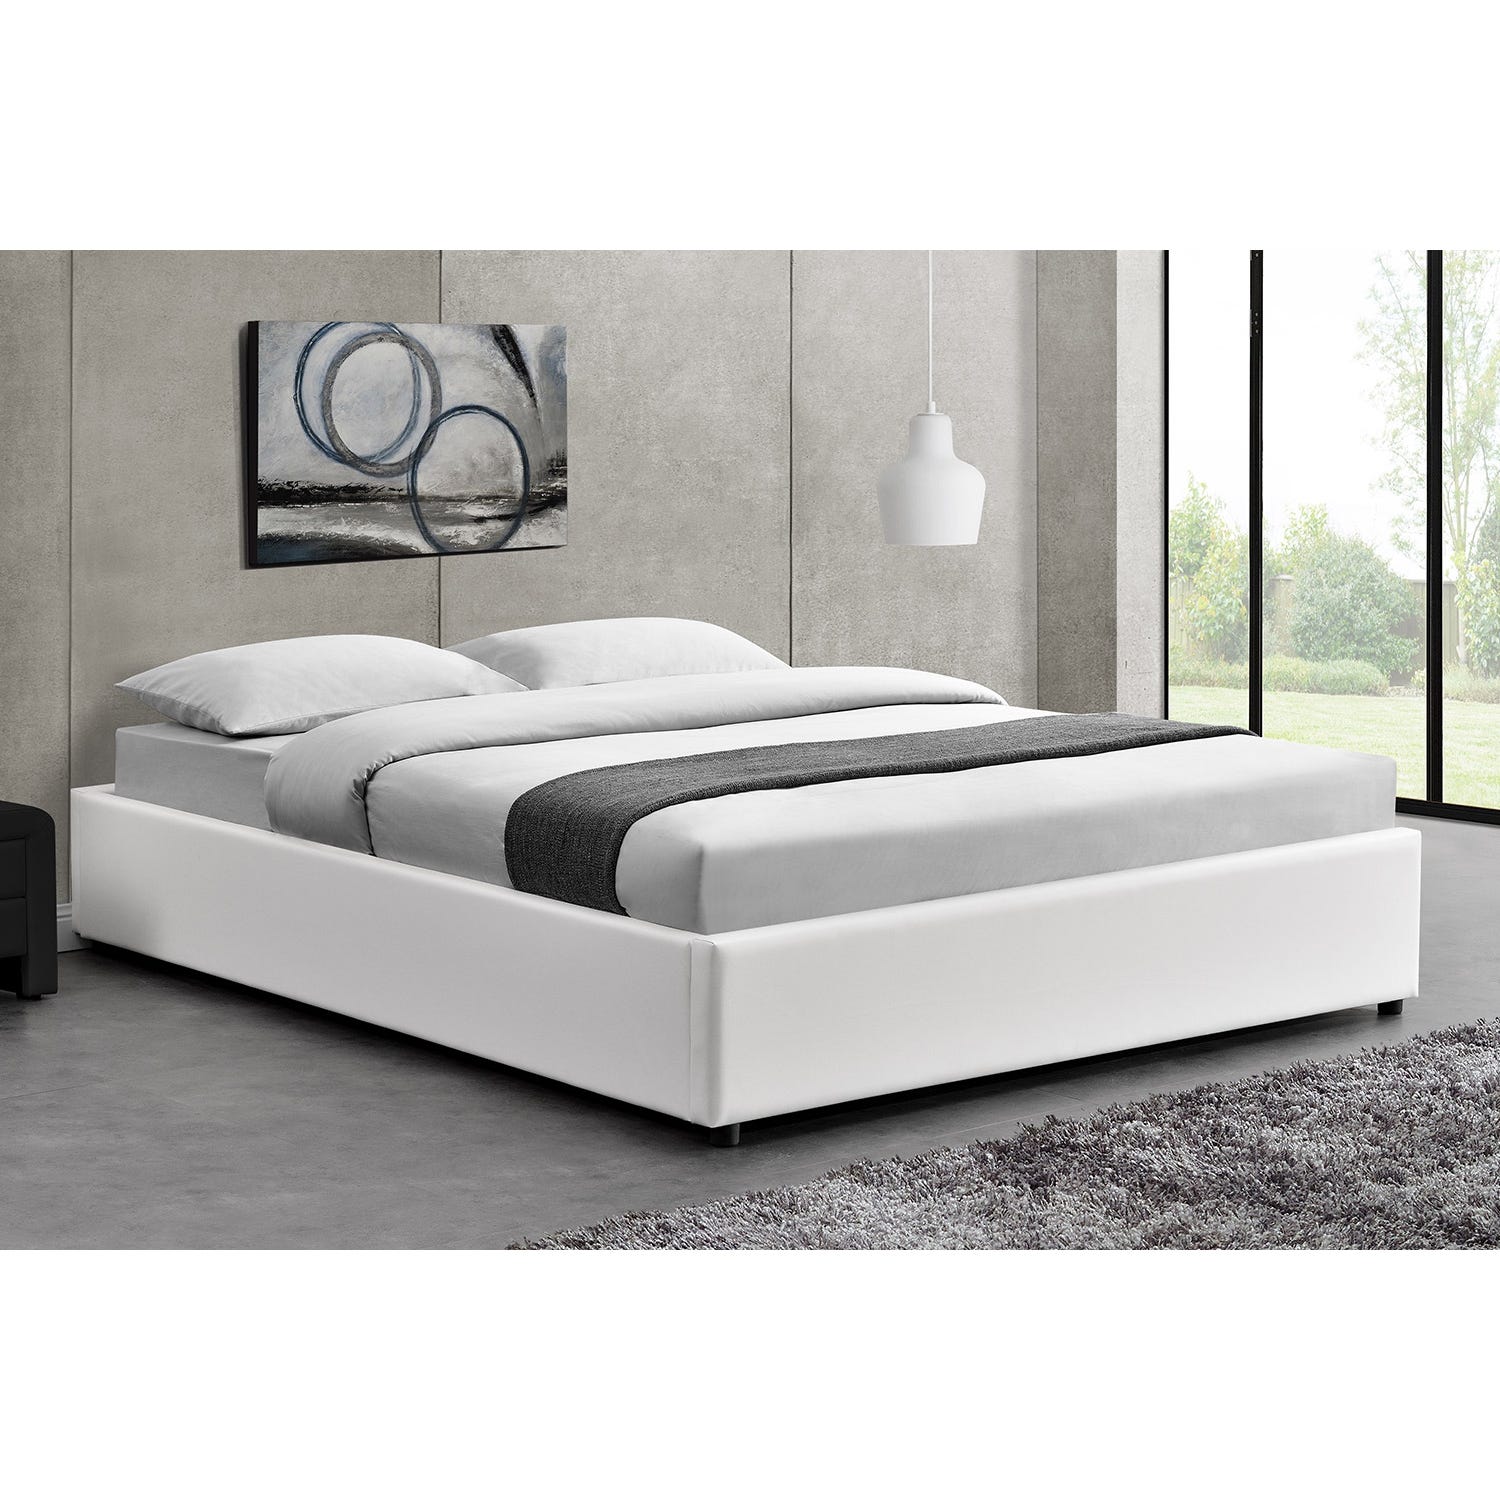 Lit escamotable BED CONCEPT 160x200 vertical avec rangements intégrés blanc